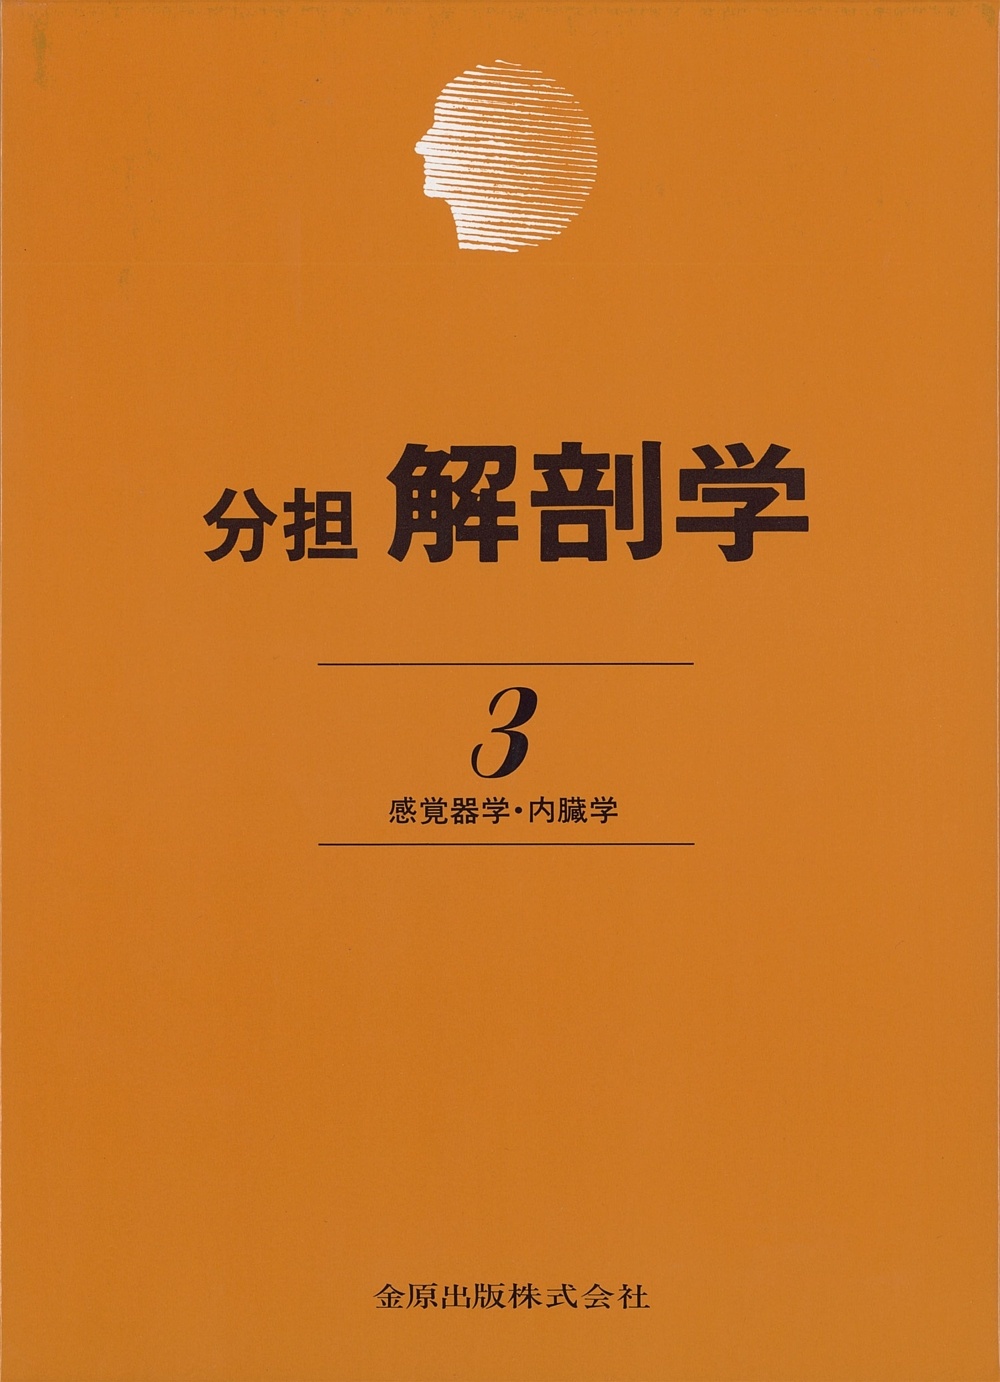 分担解剖学3 第11版【電子版】 | 医書.jp